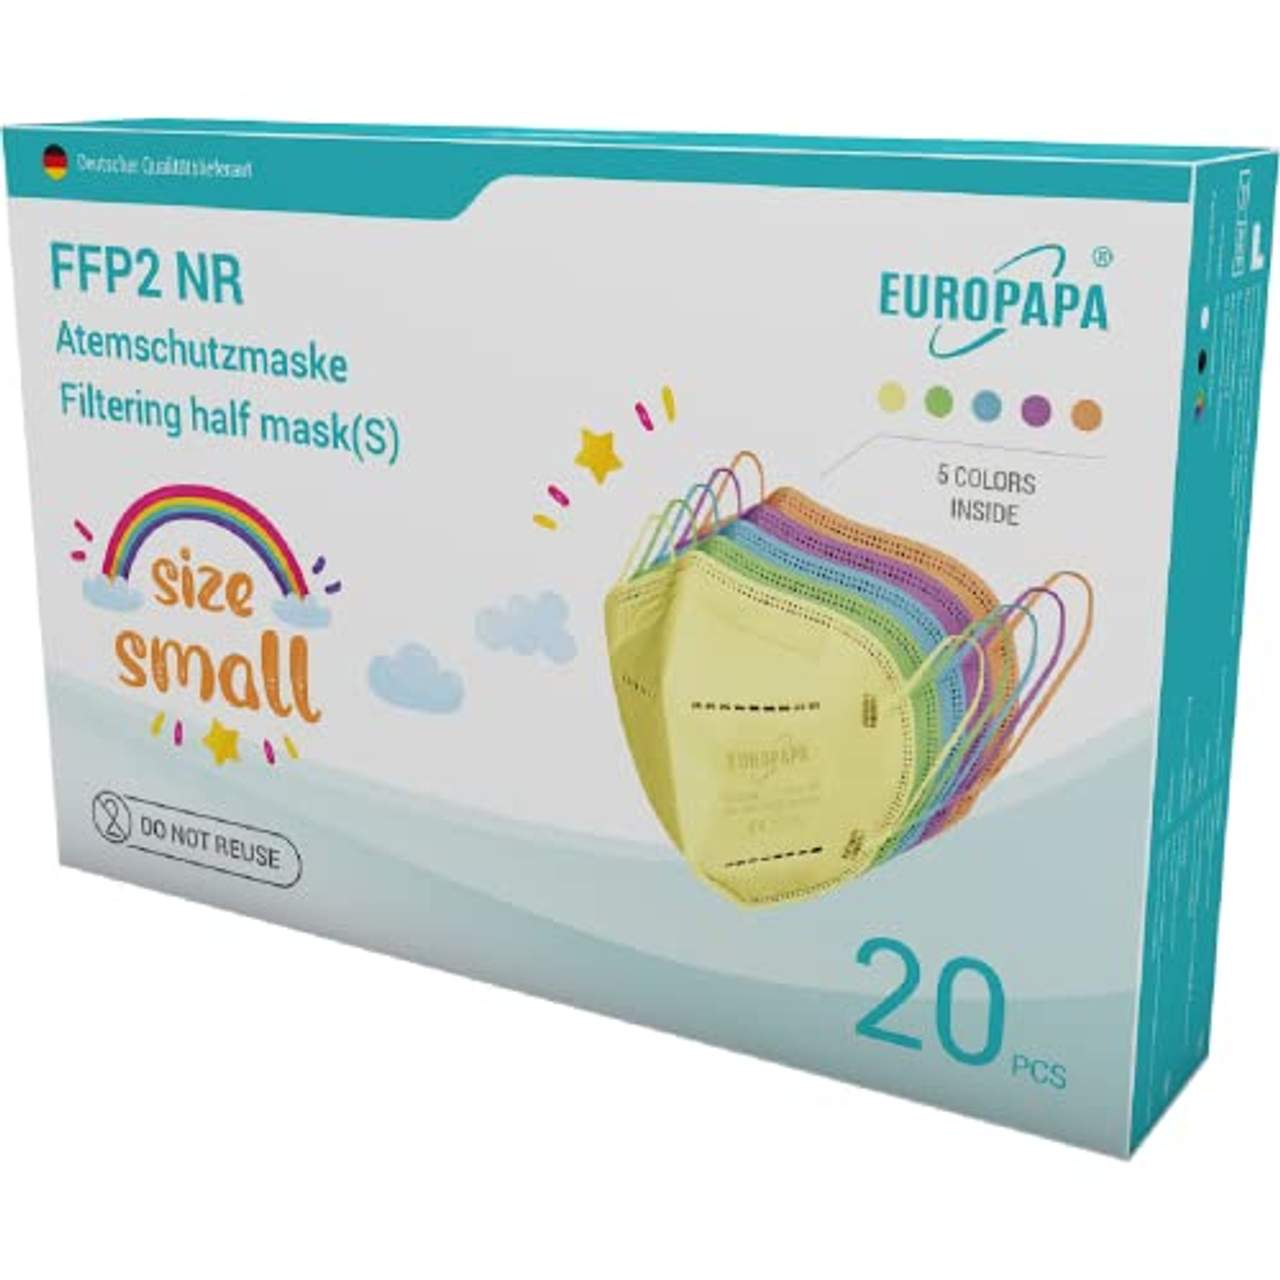 EUROPAPA 20x Bunte FFP2 Maske S in Kleiner Größe Mundschutz Masken Atemschutzmasken